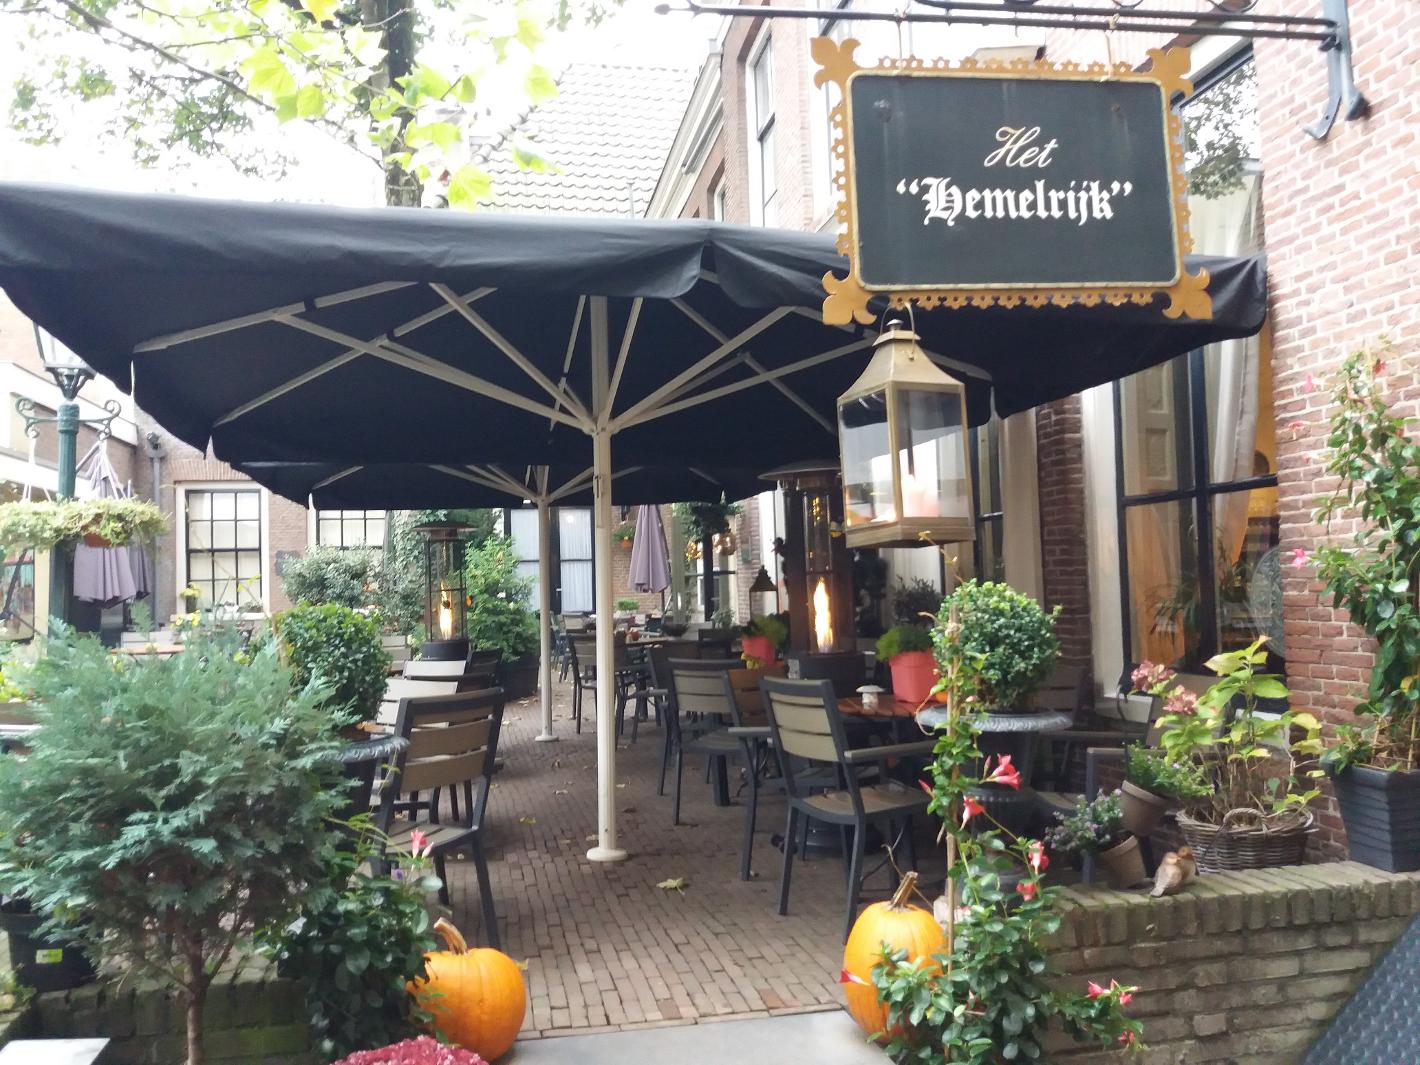 Foto Koffiehuis het Hemelrijk in Arnhem, Eten & drinken, Koffie thee drinken, Genieten van lunch - #1